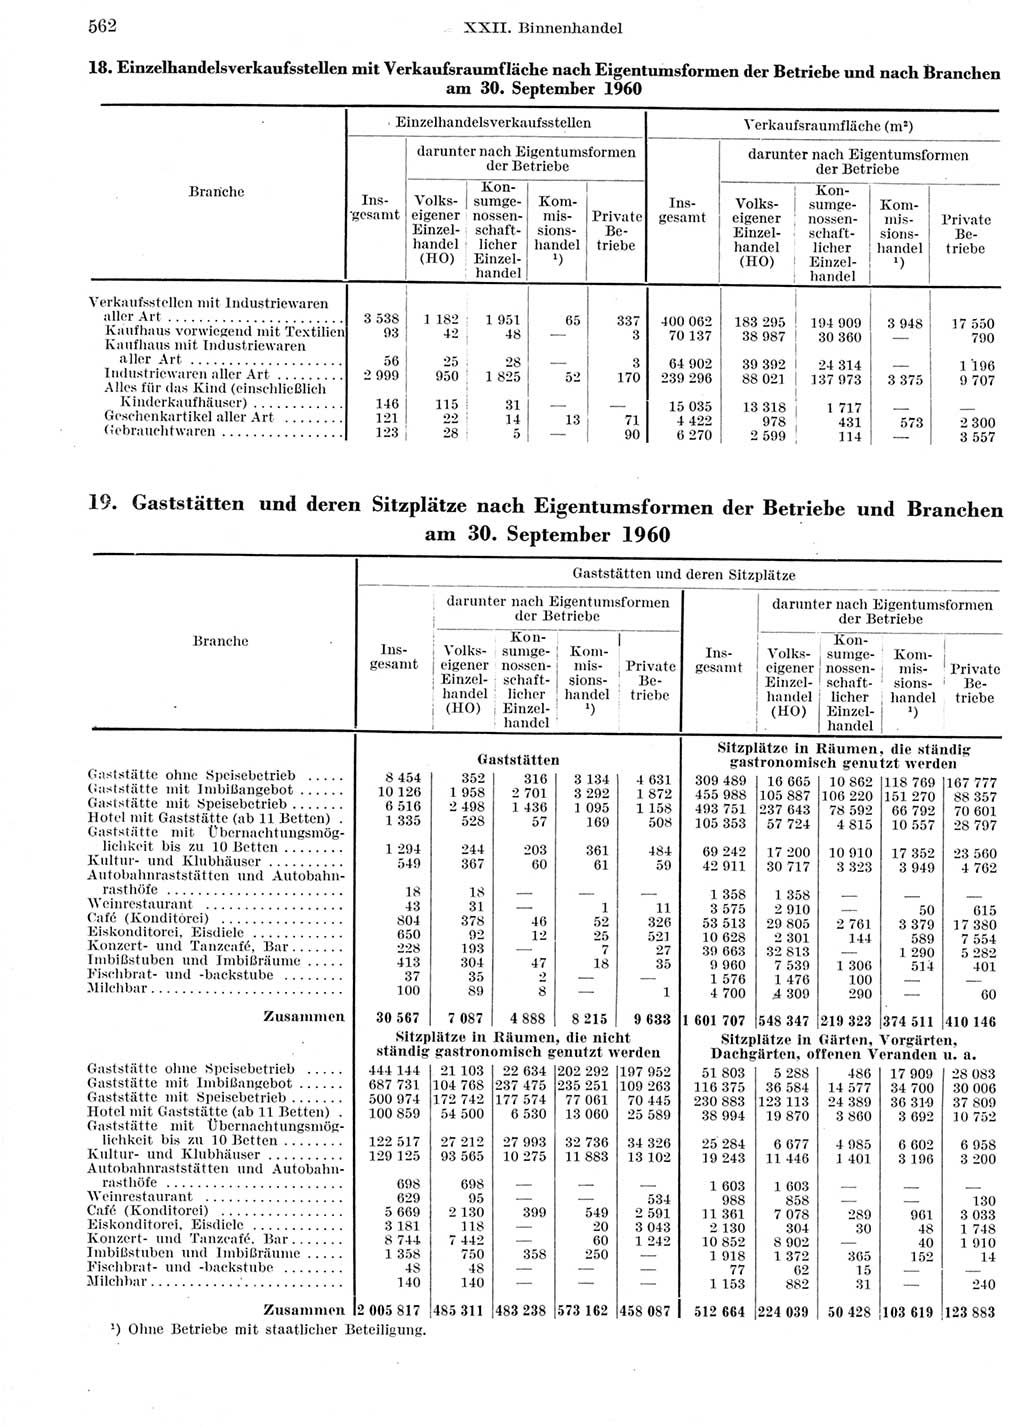 Statistisches Jahrbuch der Deutschen Demokratischen Republik (DDR) 1960-1961, Seite 562 (Stat. Jb. DDR 1960-1961, S. 562)